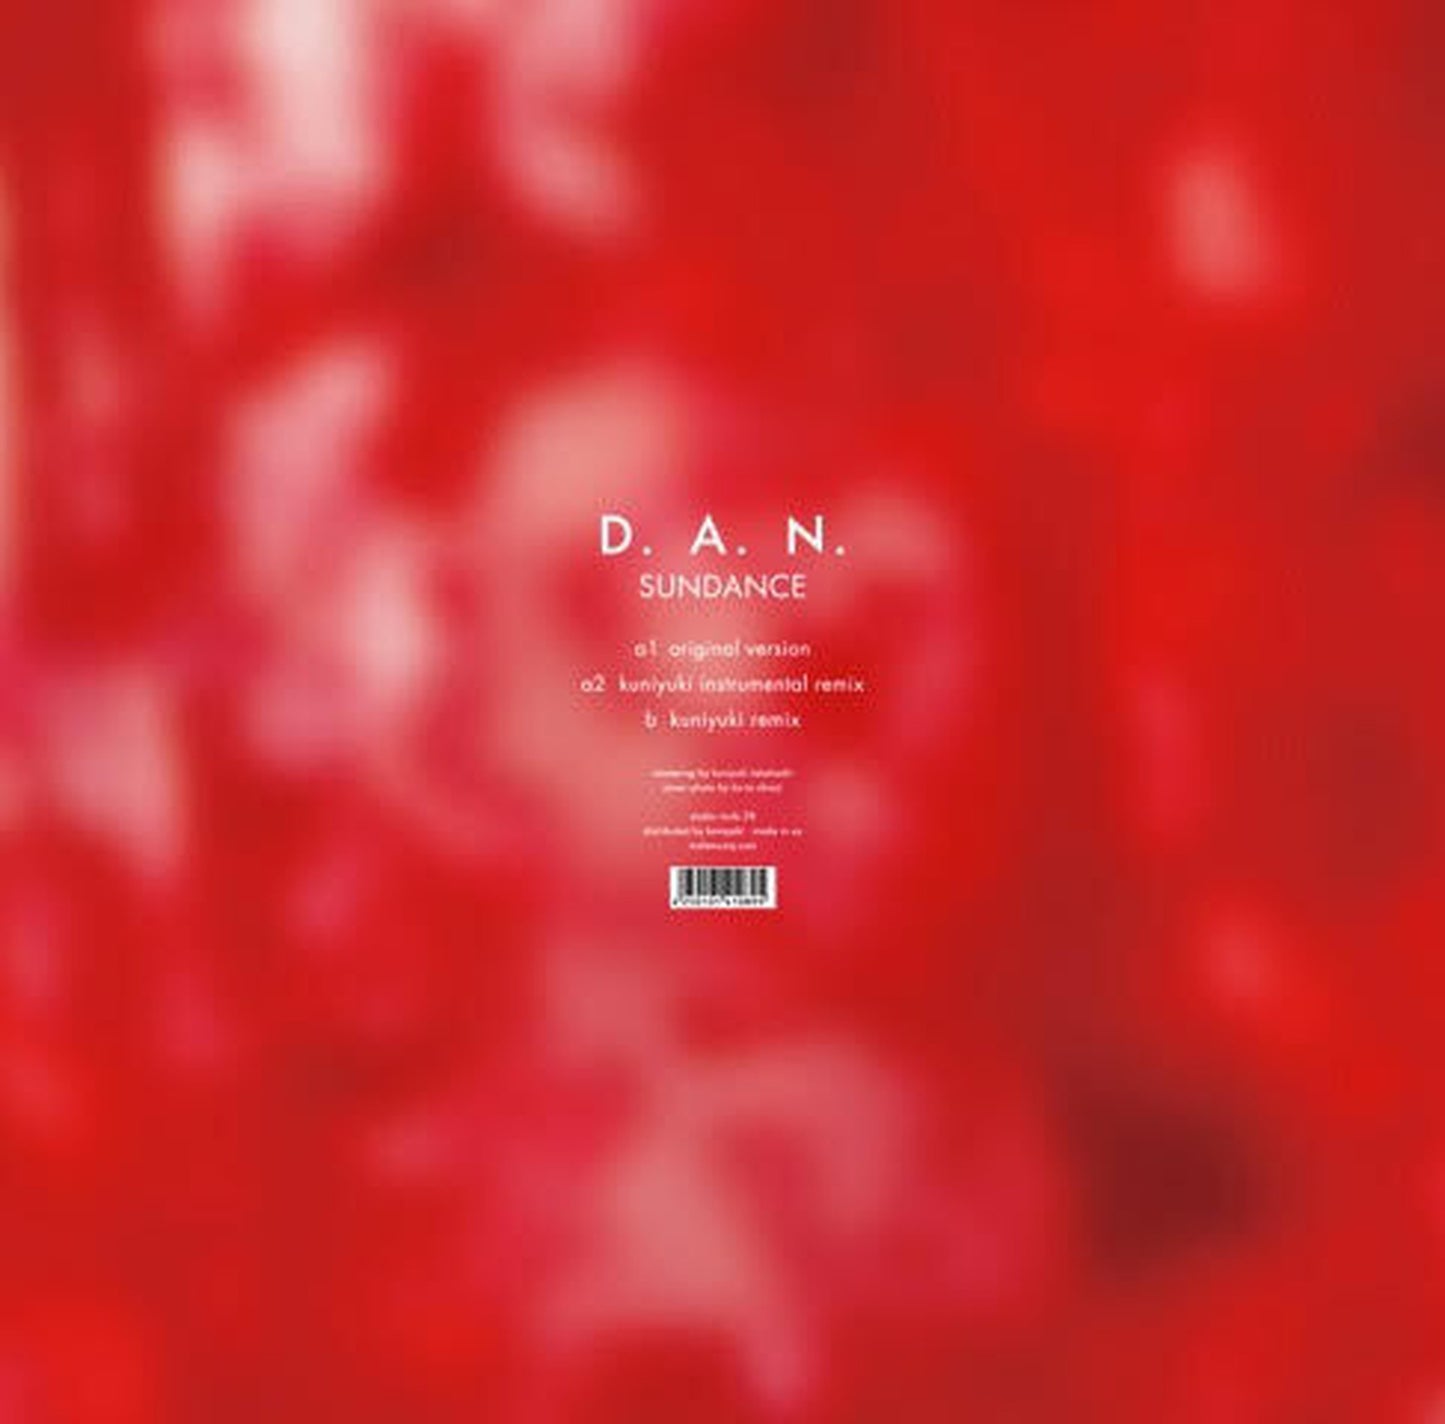 【12"】D.A.N. - Sundance - Kuniyuki Remix